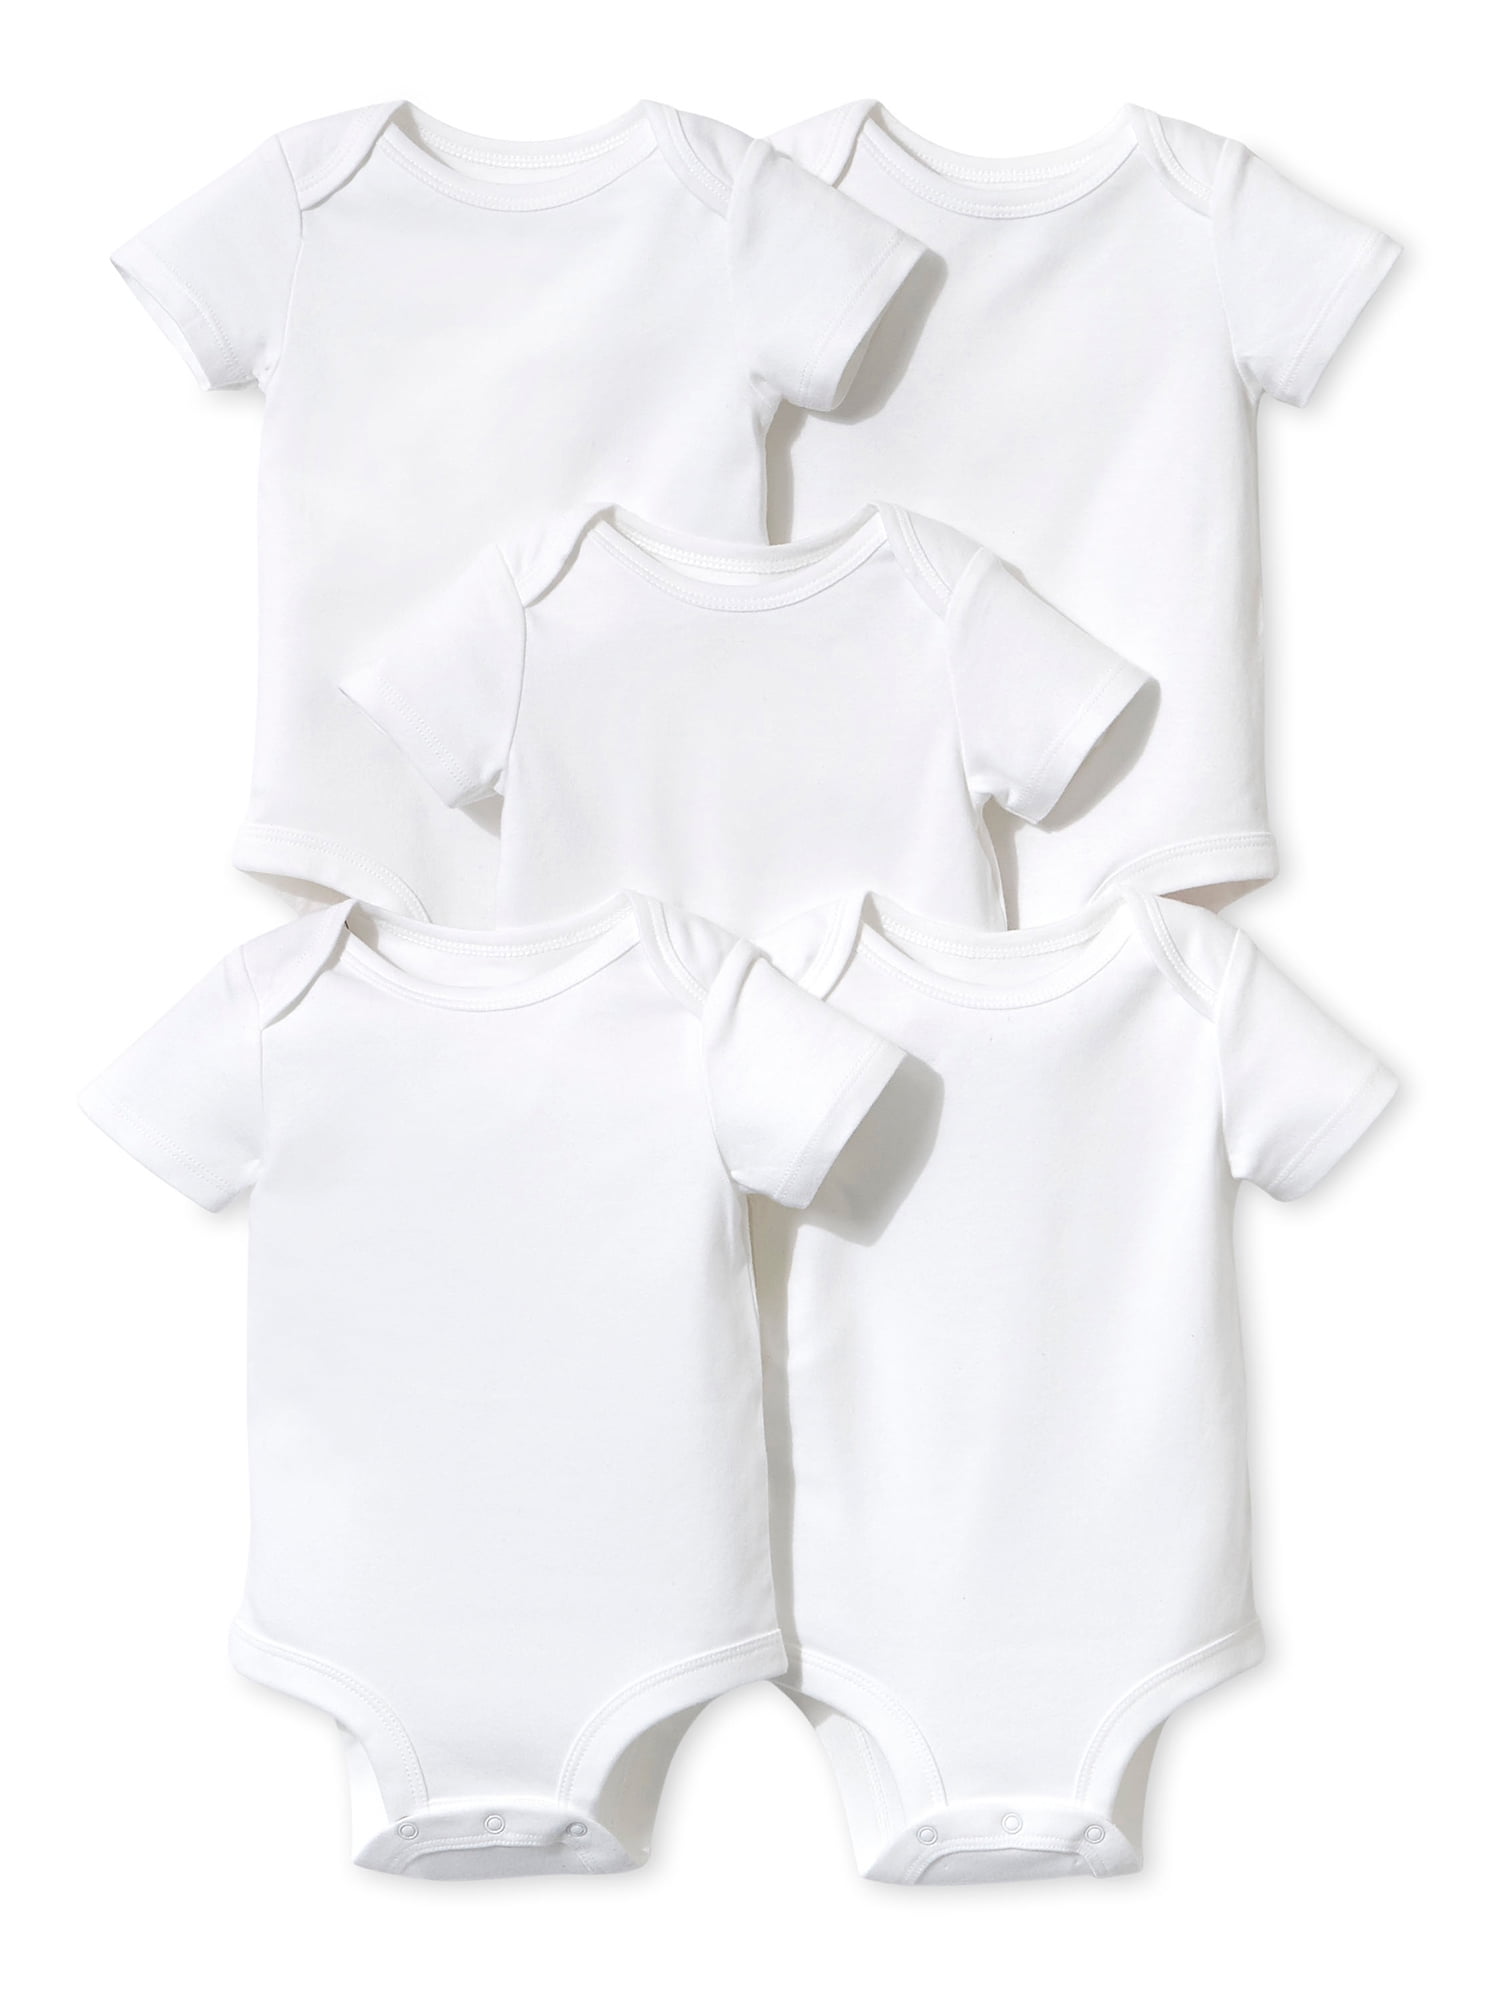 Little Star Organic Baby Boy or Girl Gender Neutral White Short Sleeve ...